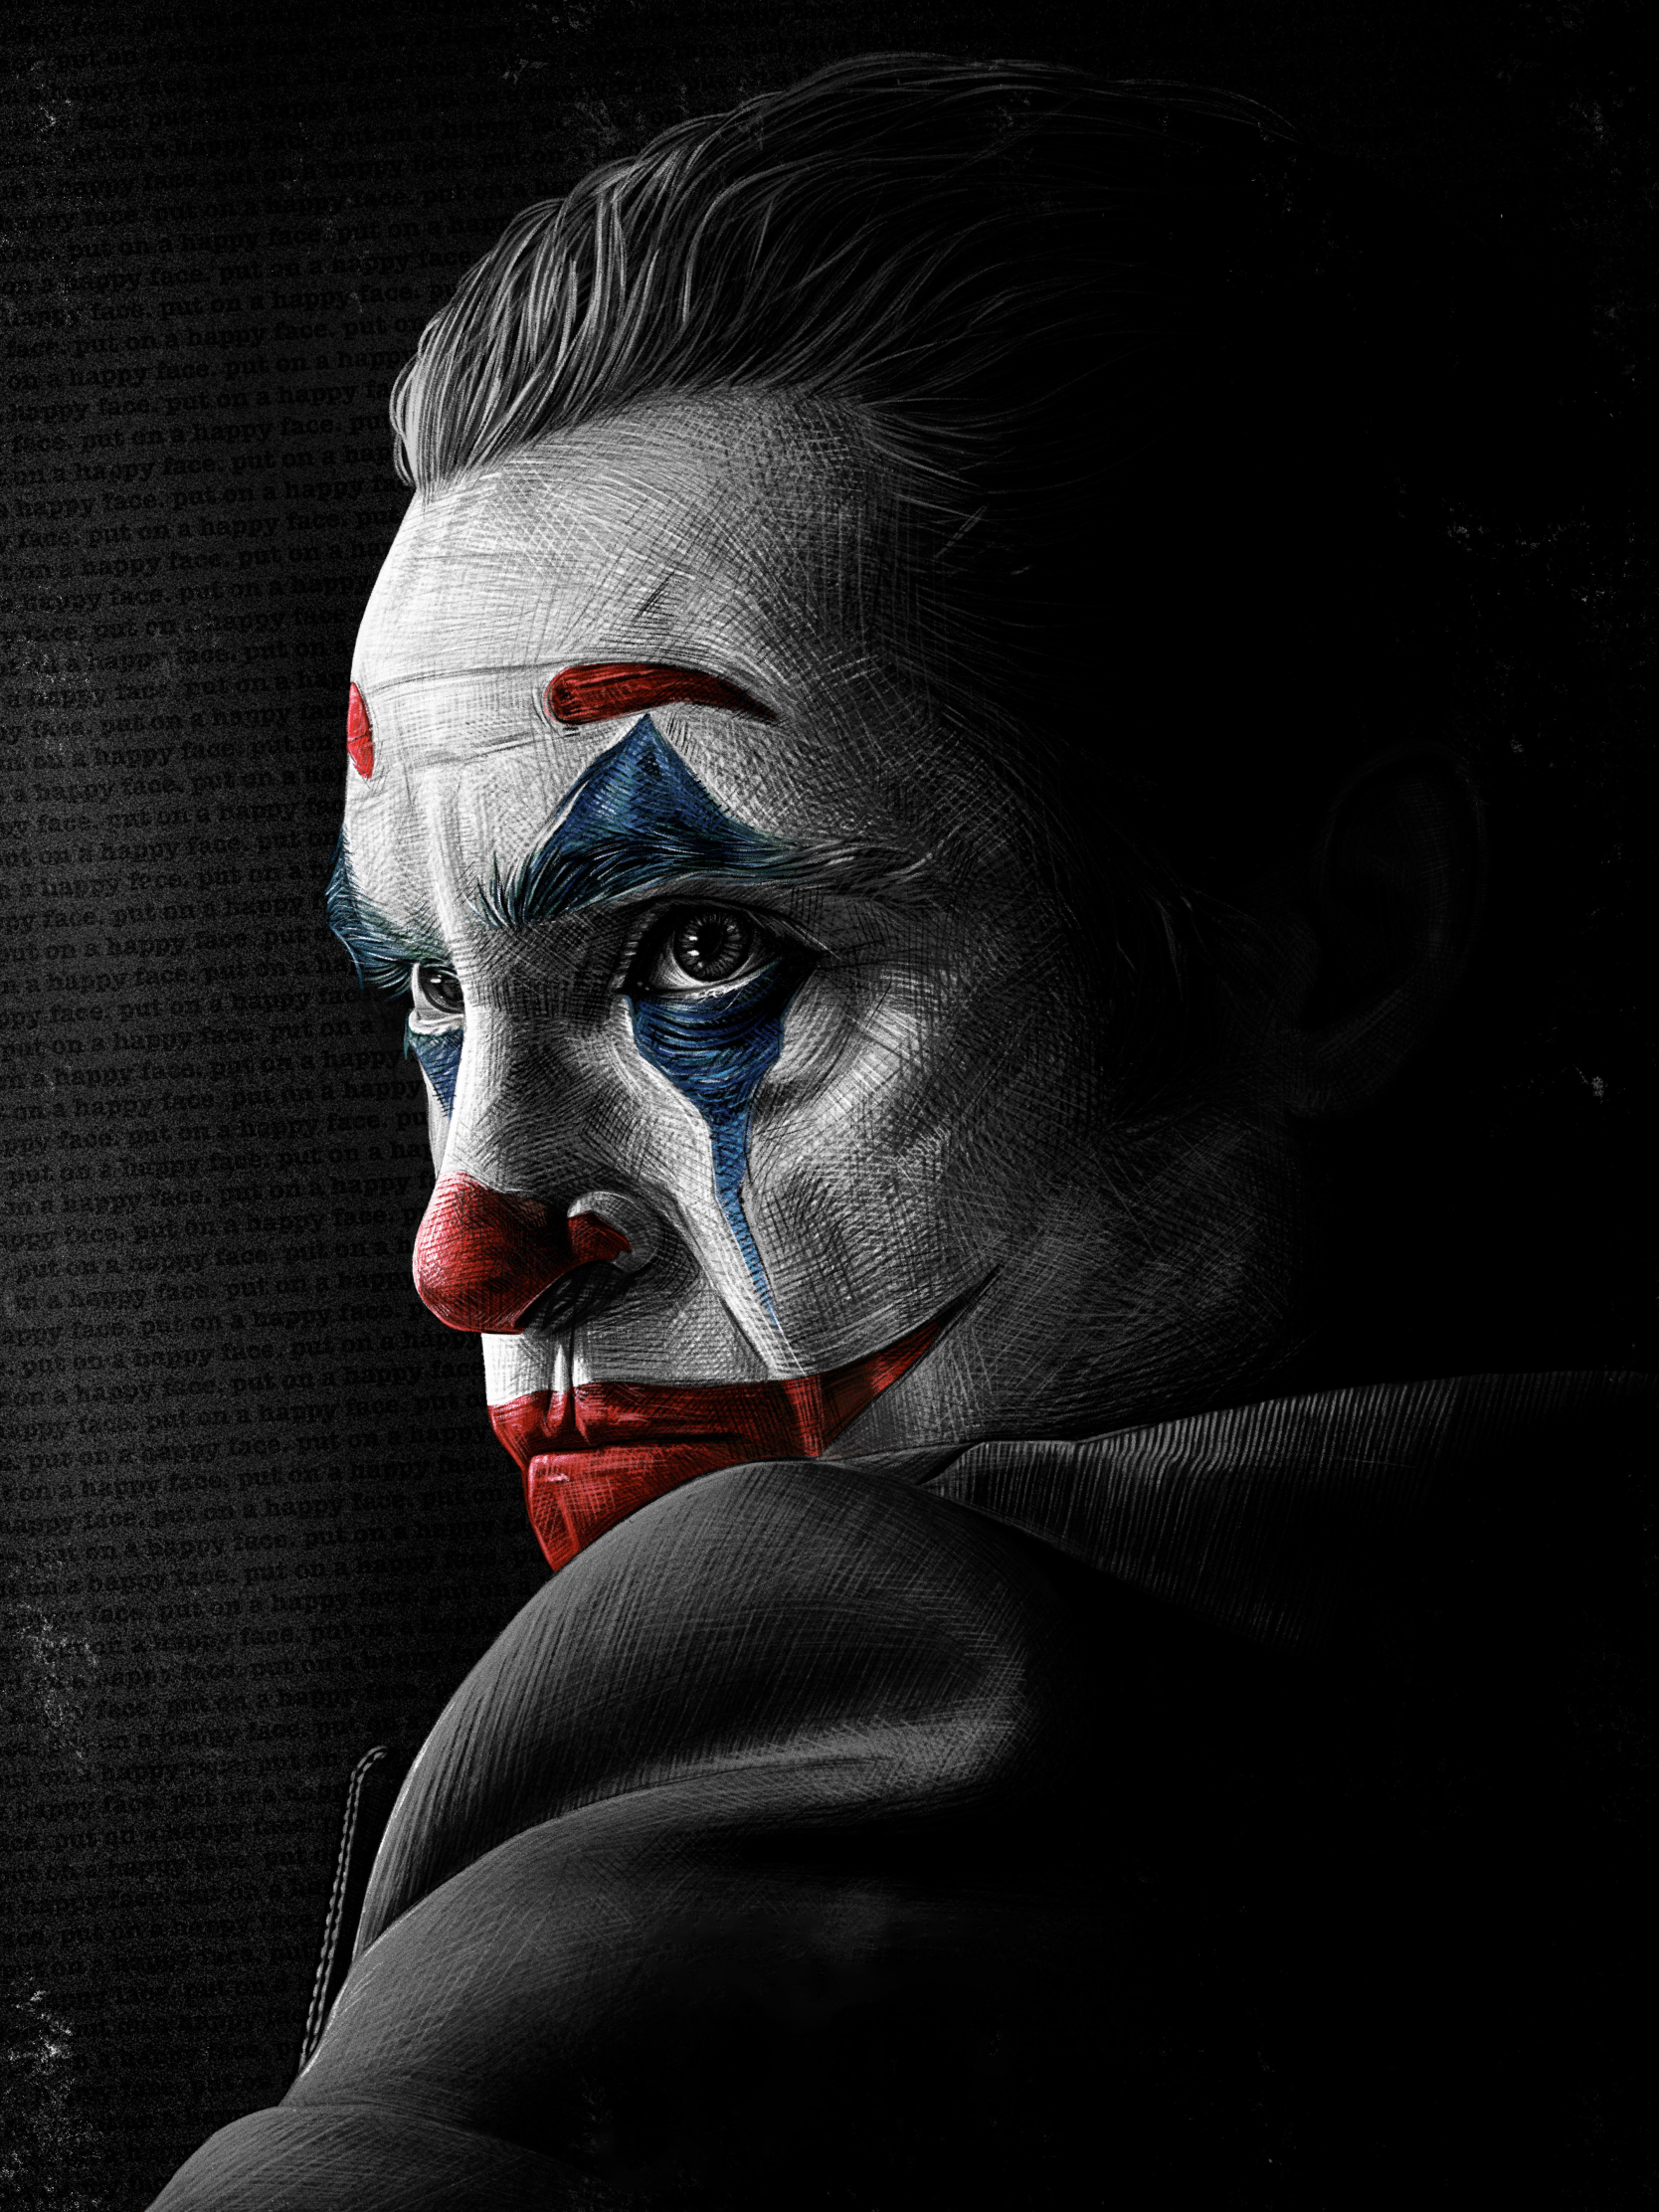 1668X2224 4K Joaquin Phoenix As Joker 1668X2224 Resolution Wallpaper, Hd  Artist 4K Wallpapers, Images, Photos And Background - Wallpapers Den